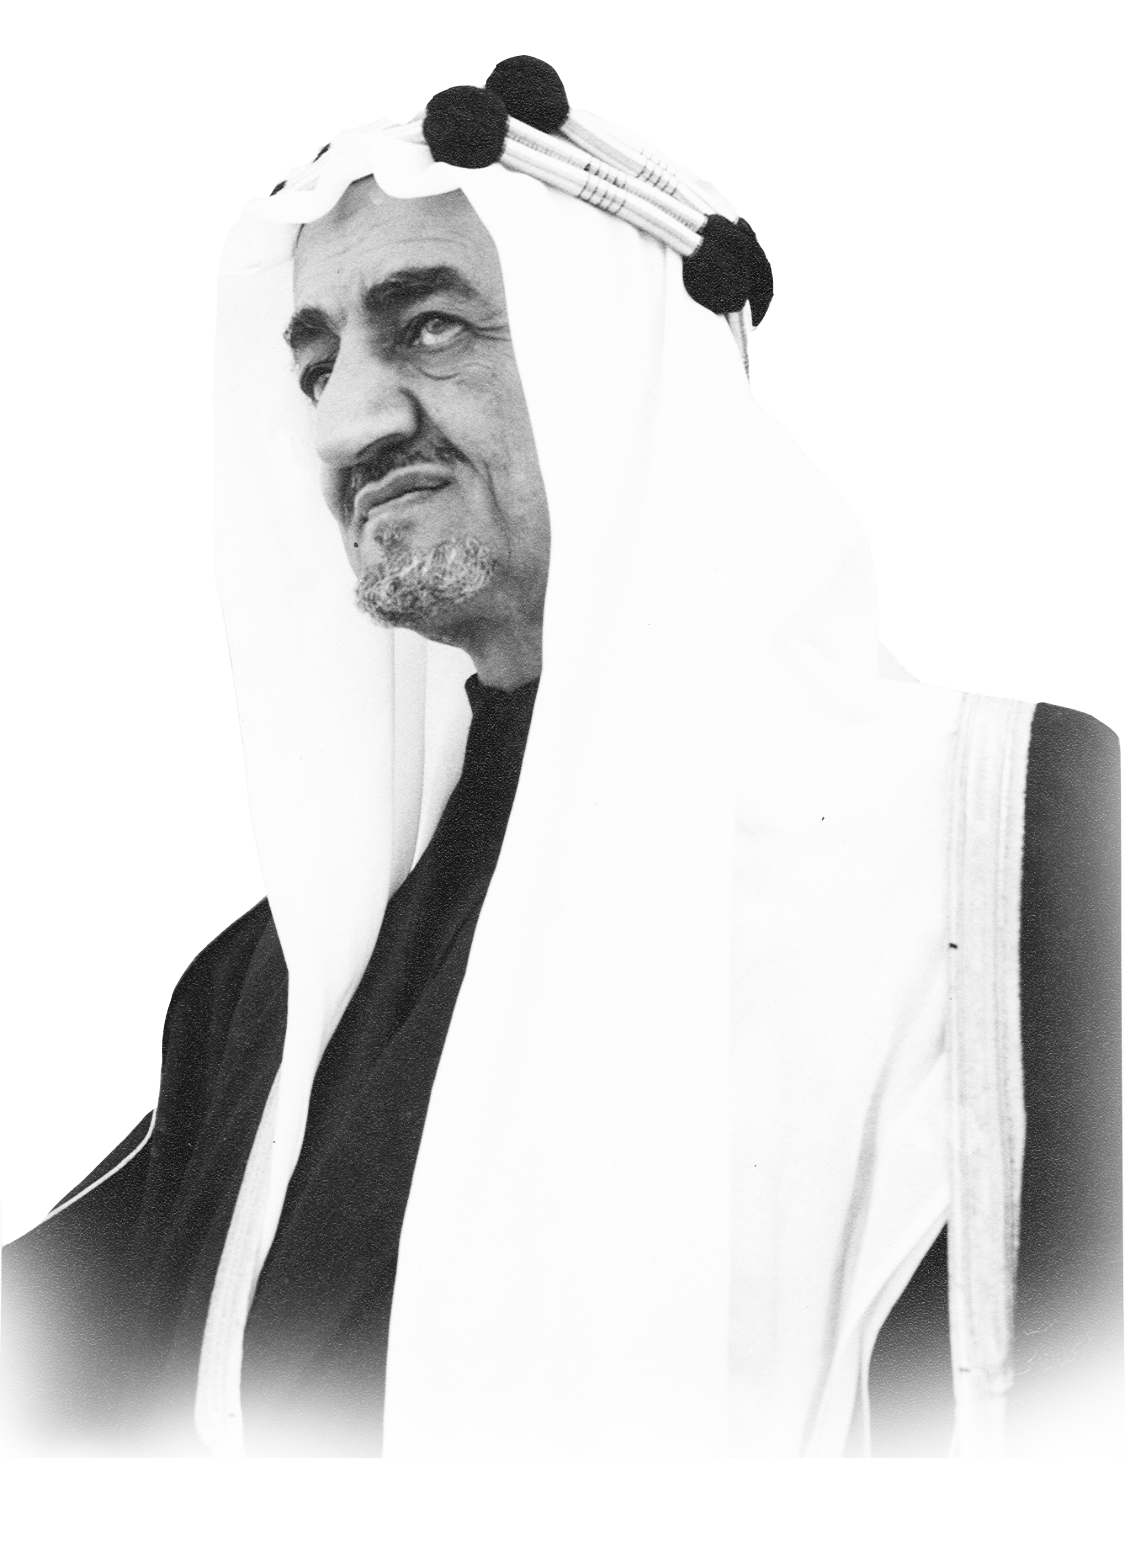 ولد الملك فيصل بن عبدالعزيز في مدينة